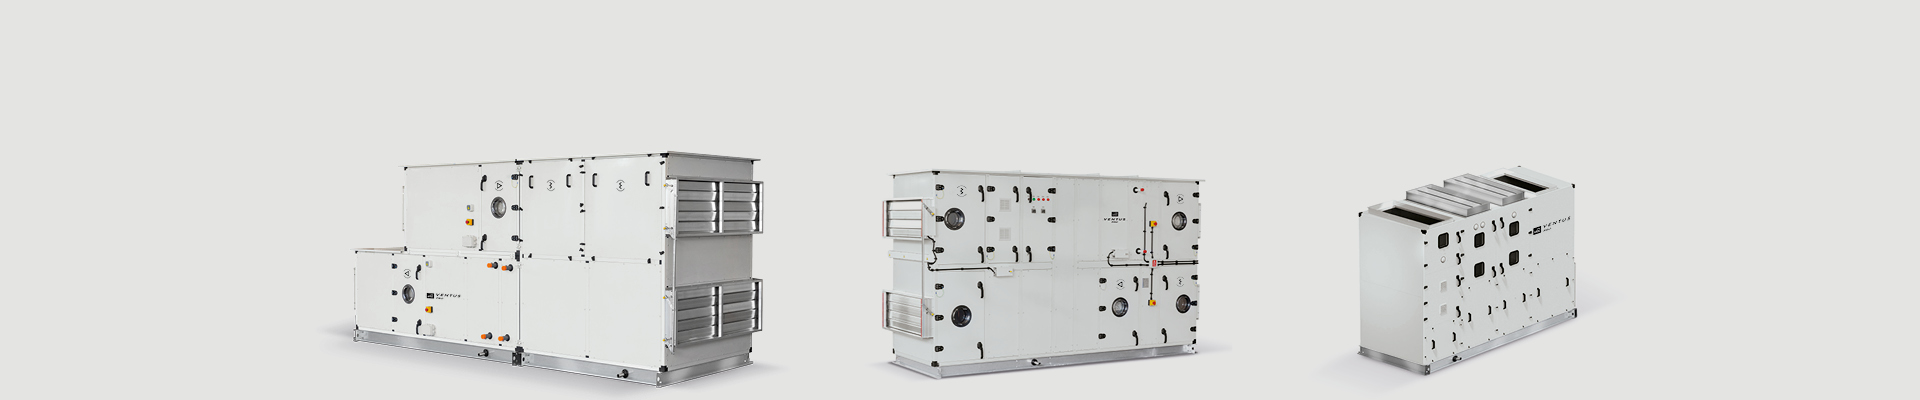 Агрегаты предназначены для вентиляции и кондиционирования воздуха технологических процессов, а также для вентиляции бассейнов. - slider